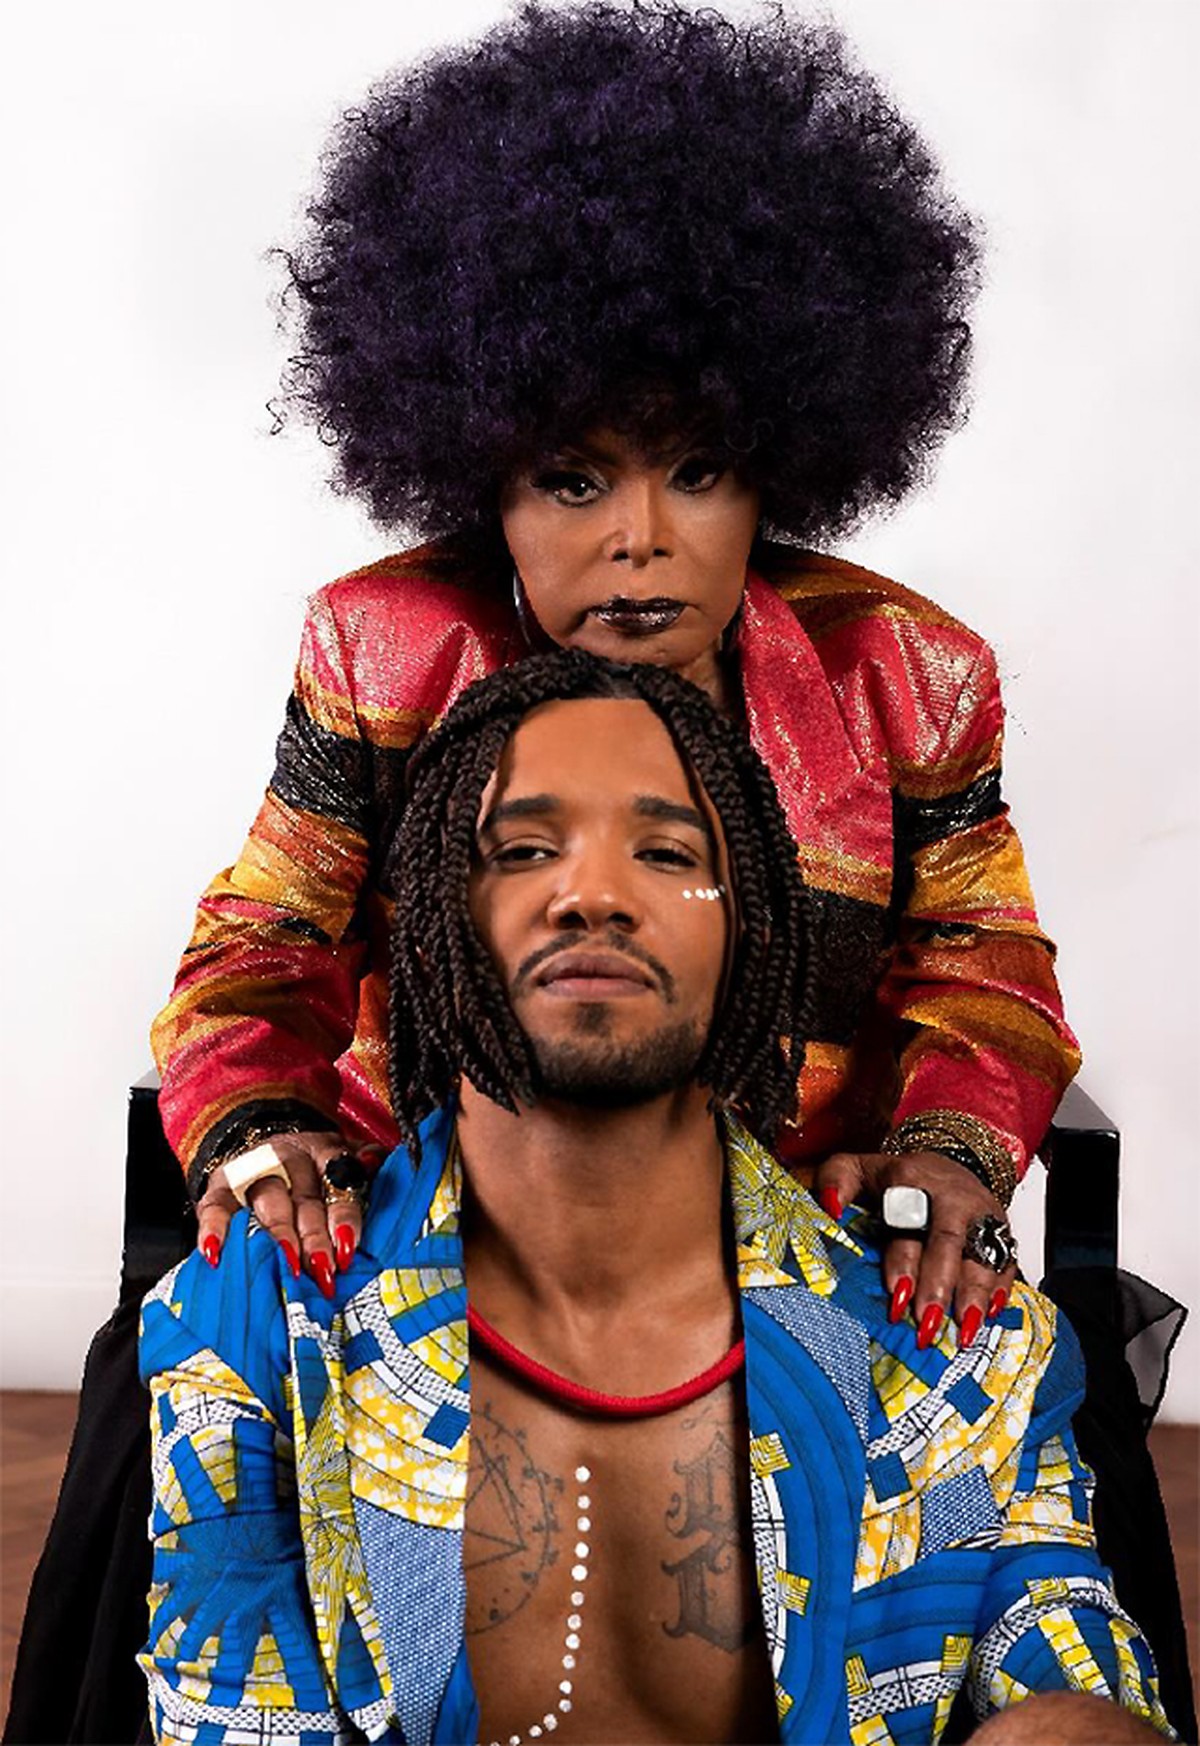 Elza Soares e Renegado celebram o brilho de Rebeca Andrade e protestam contra o racismo no single ‘Black power’ | Blog do Mauro Ferreira